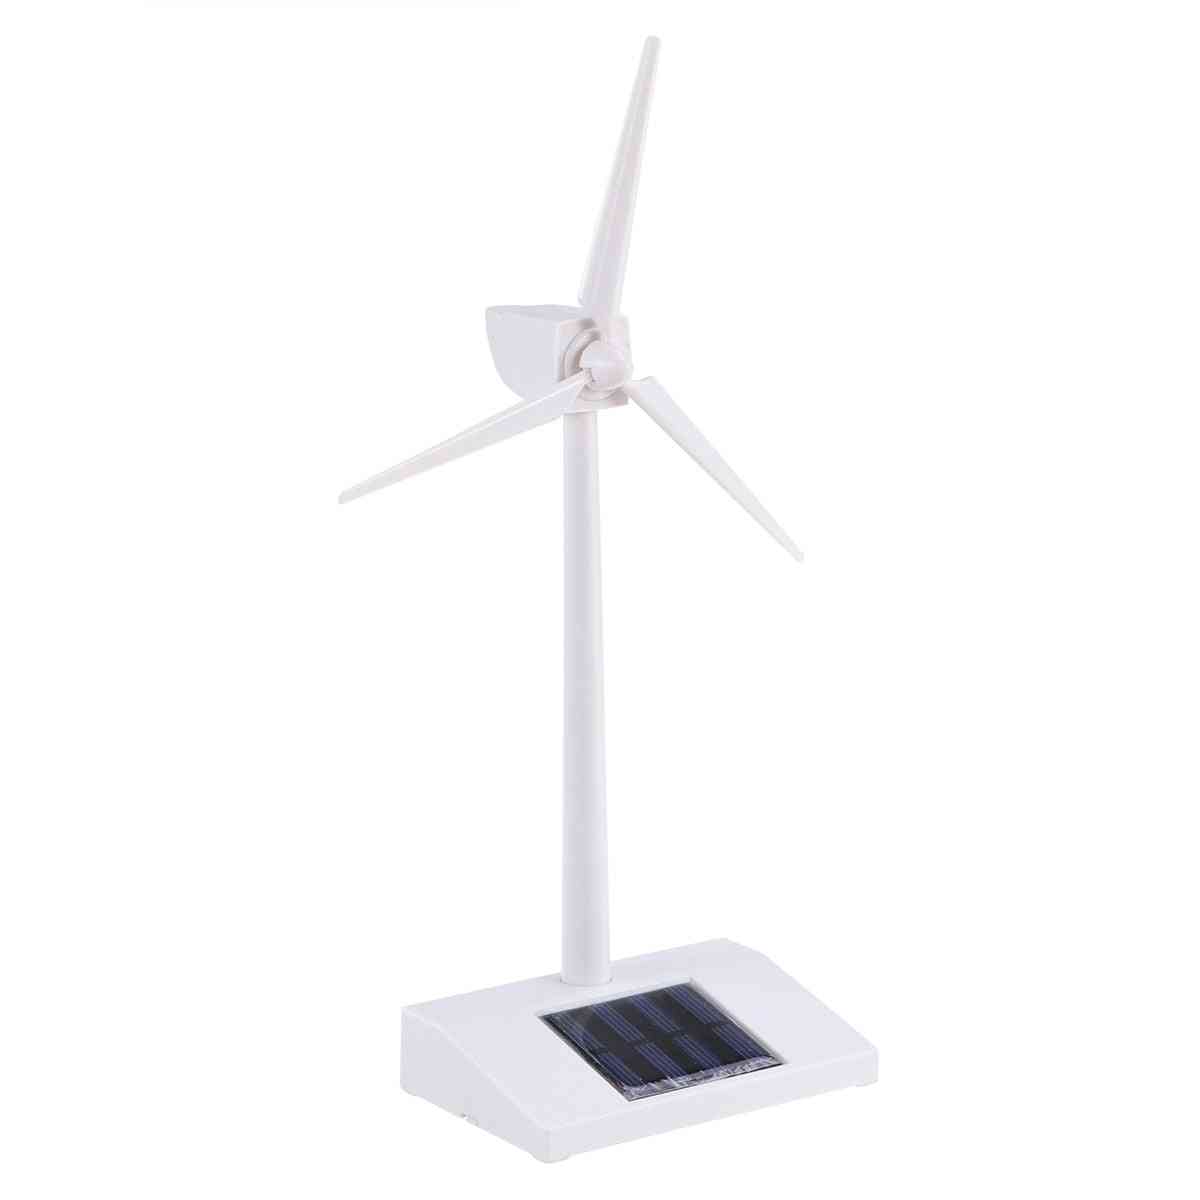 Desktop vindmølle model soldrevne vindmøller plast til uddannelse sjovt legetøj